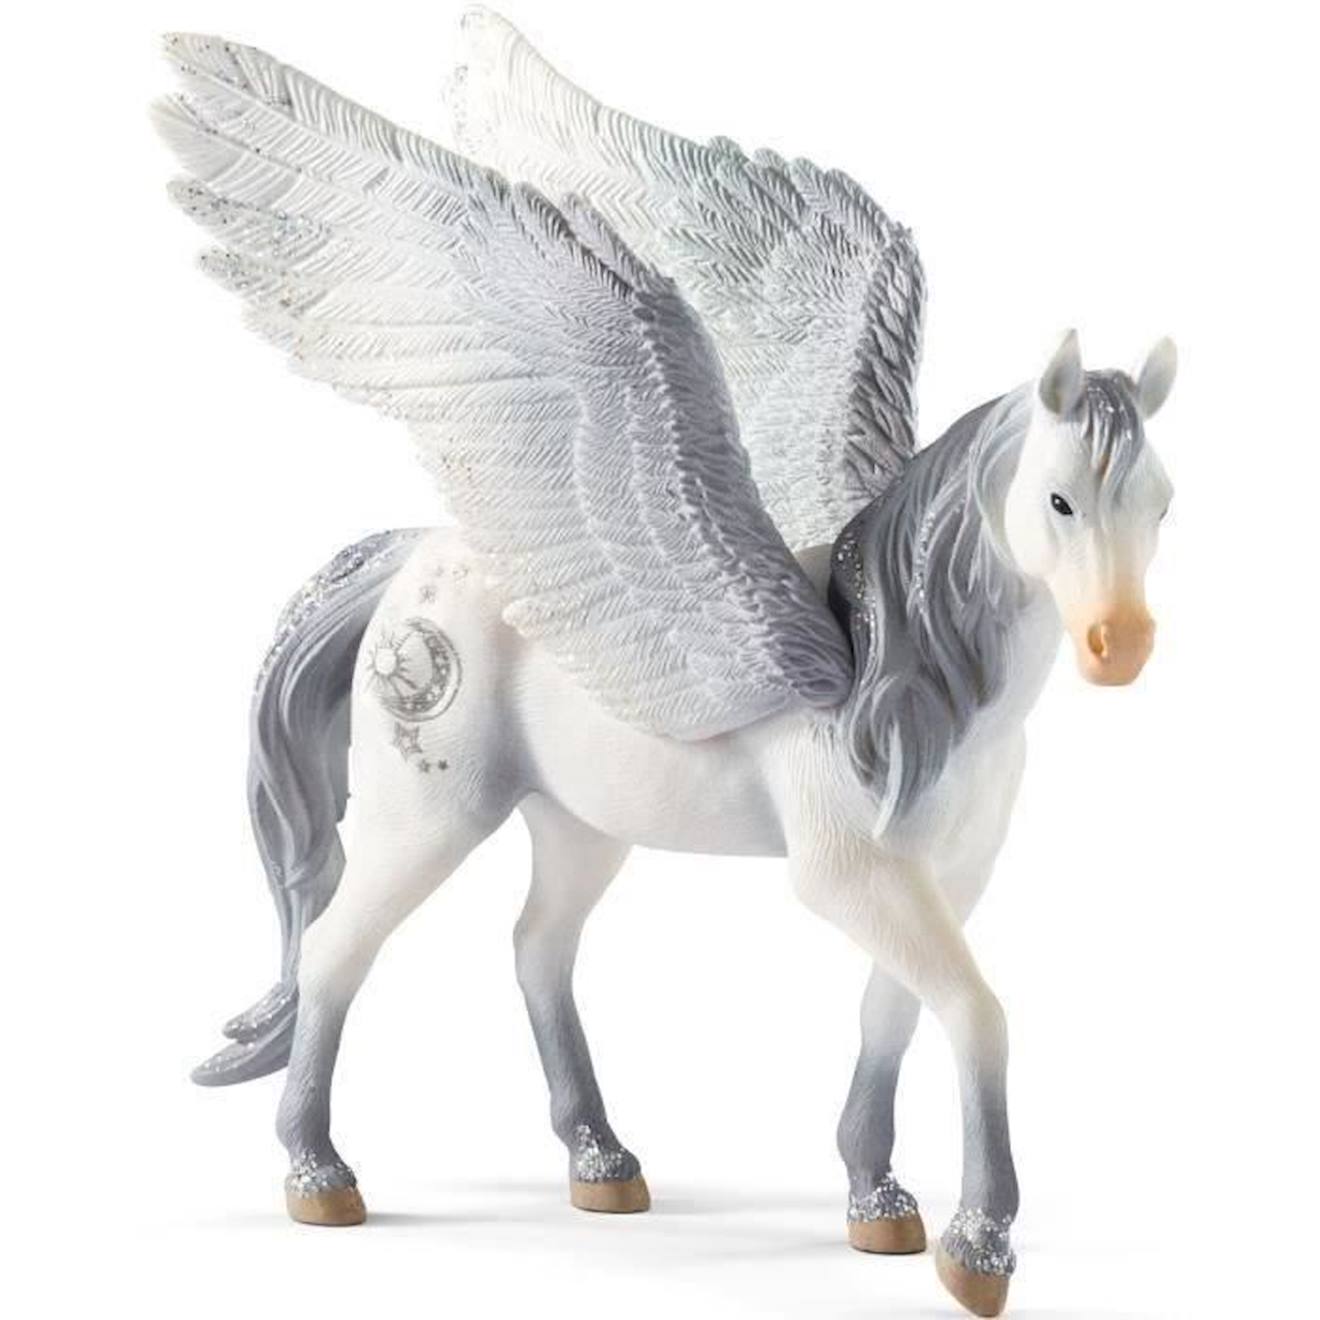 Figurine Licorne Pegasus , Figurine Fantastique, Pour Enfants Dès 5 Ans - Schleich 70522 Bayala Blan